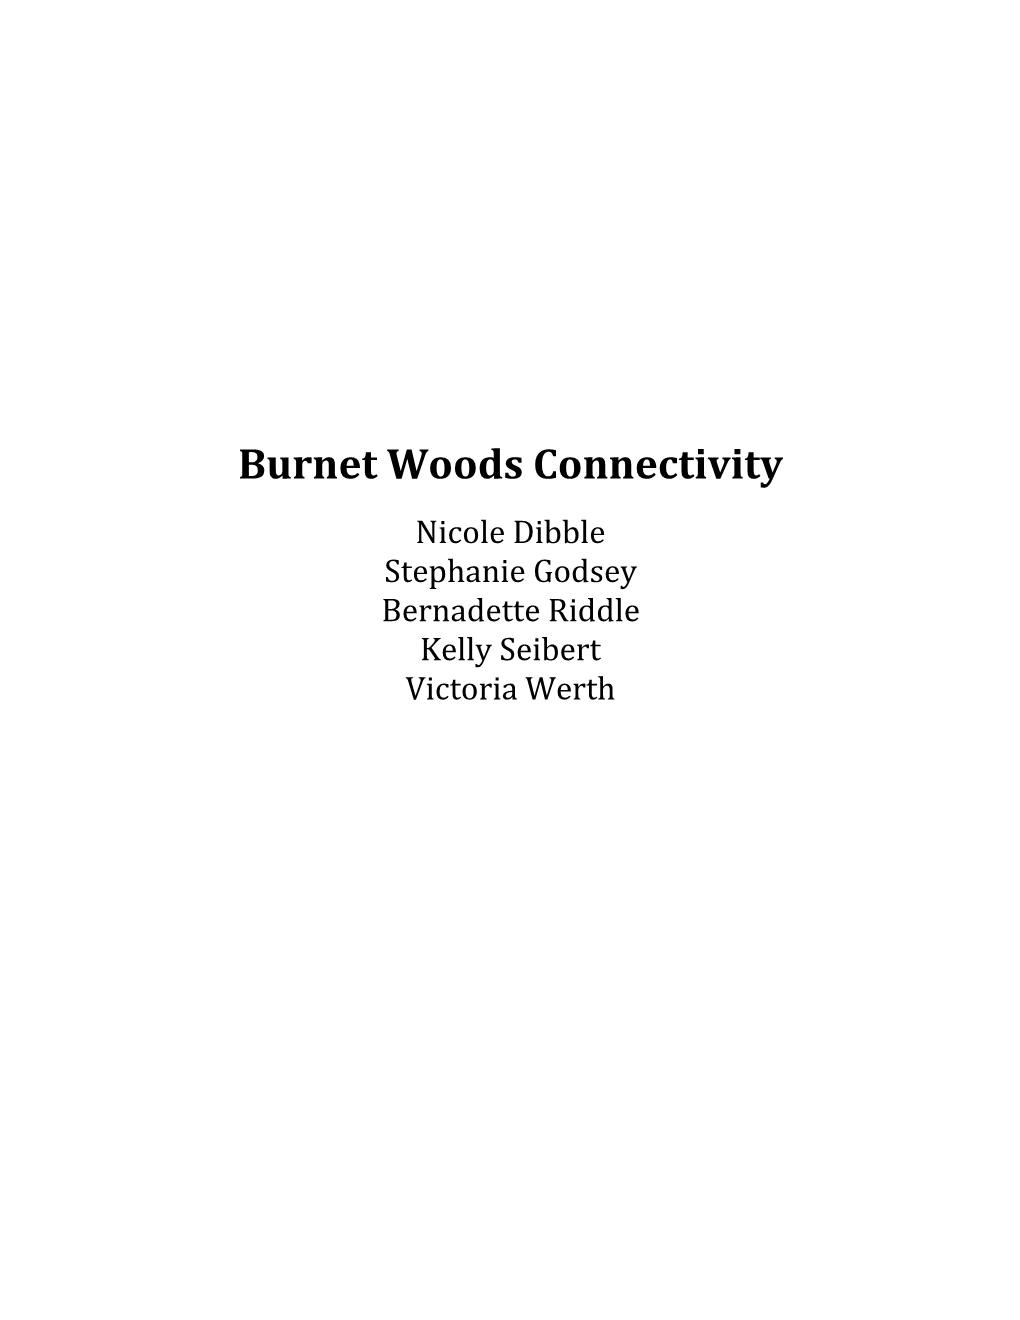 Burnet Woods Connectivity